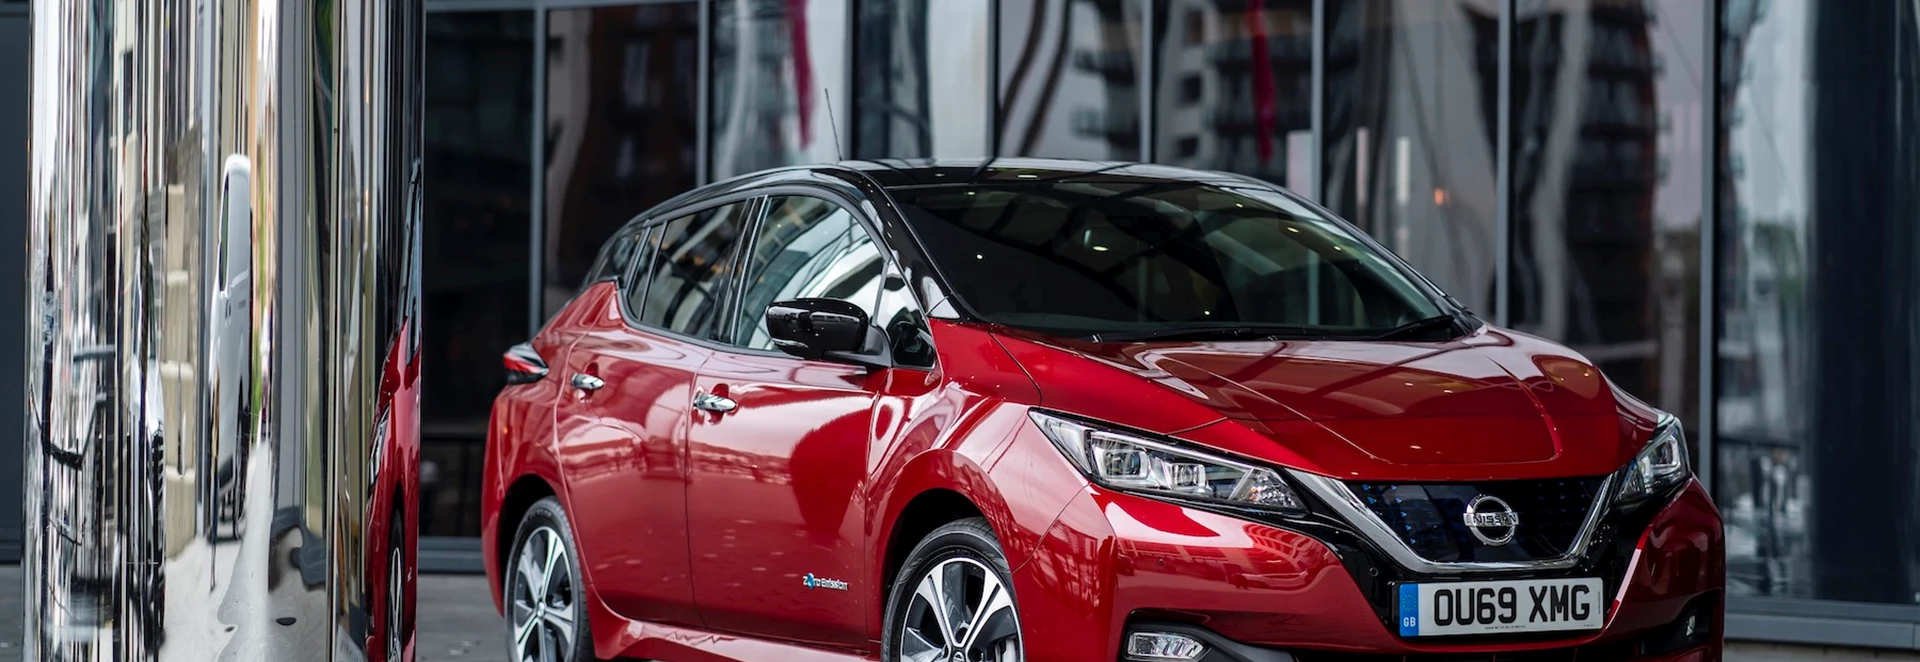 Nissan to deliver 2,000 Leaf EVs to Uber